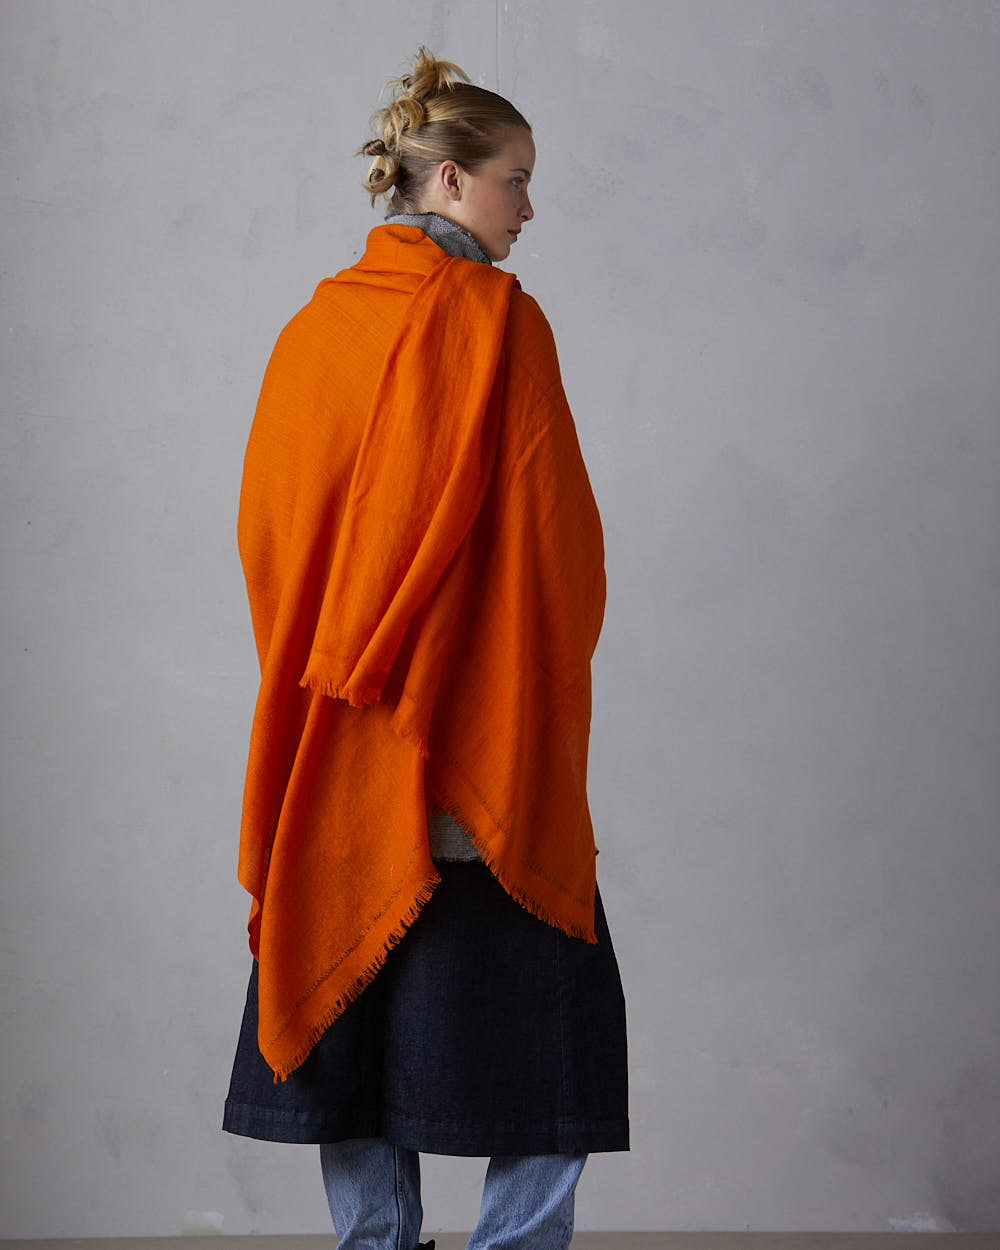 ”Pema” stor sjal i merinoull från Västbengalen – Pema orange